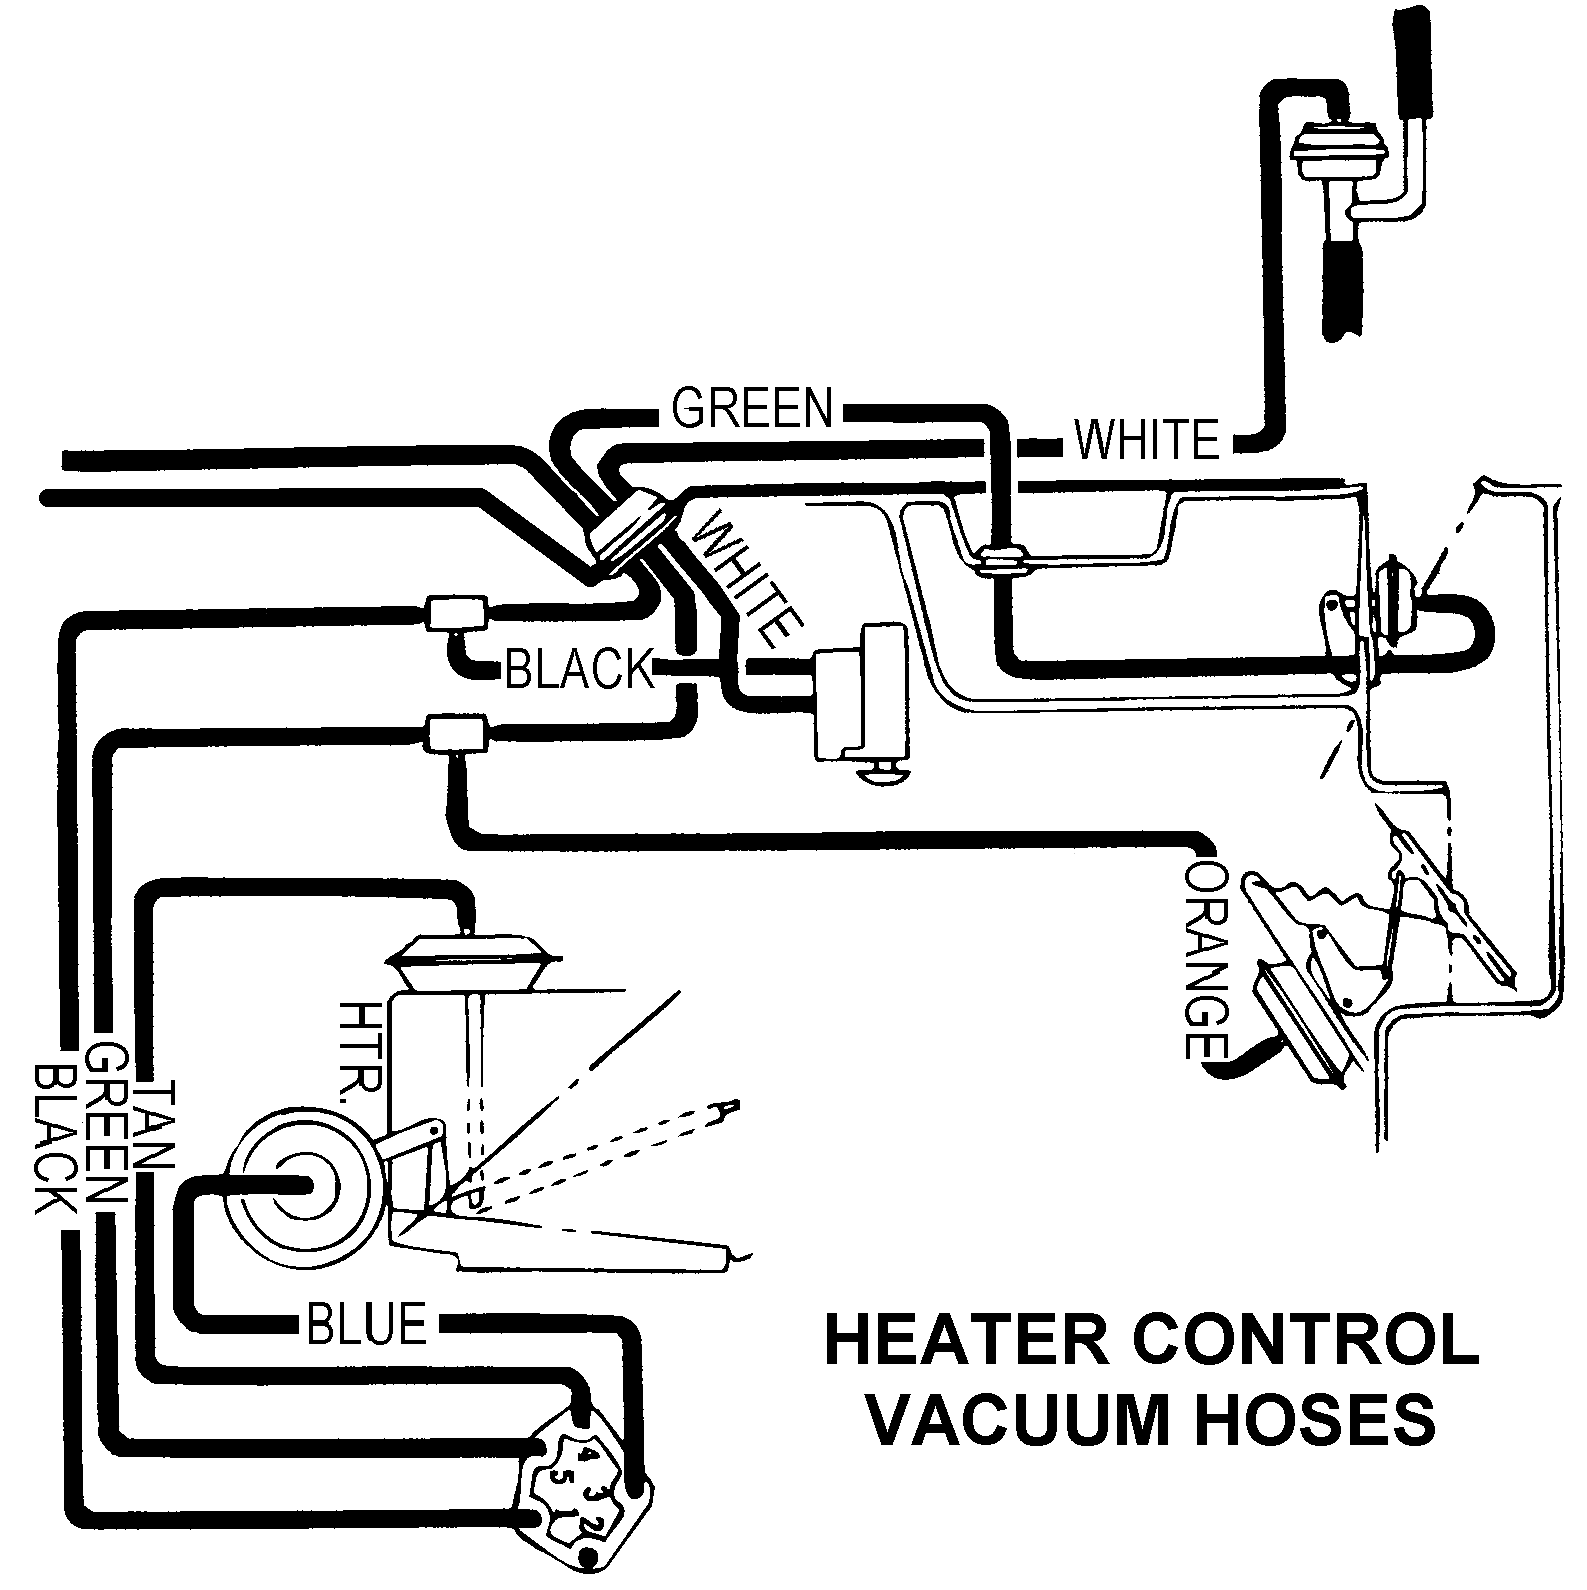 Heater Control Vacuum Hoses - Diagram View - Chicago ... 86 camaro headlamp wire diagram 